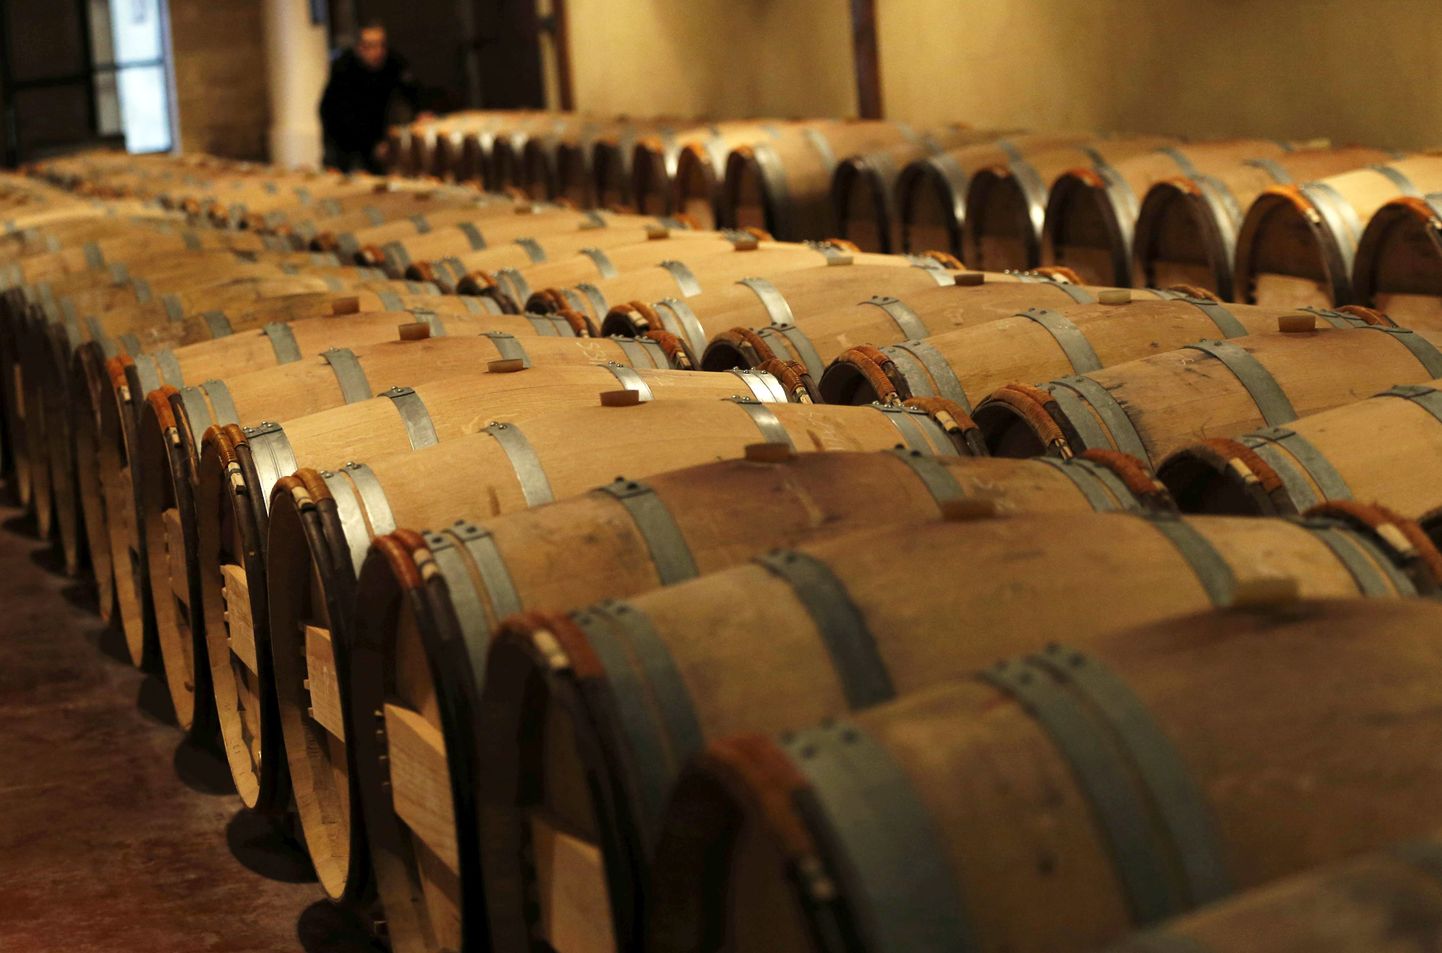 Veinivaadid Chateau Domaine de Chevalier veinikeldrid Bordeaux lähedal Prantsuamaal.